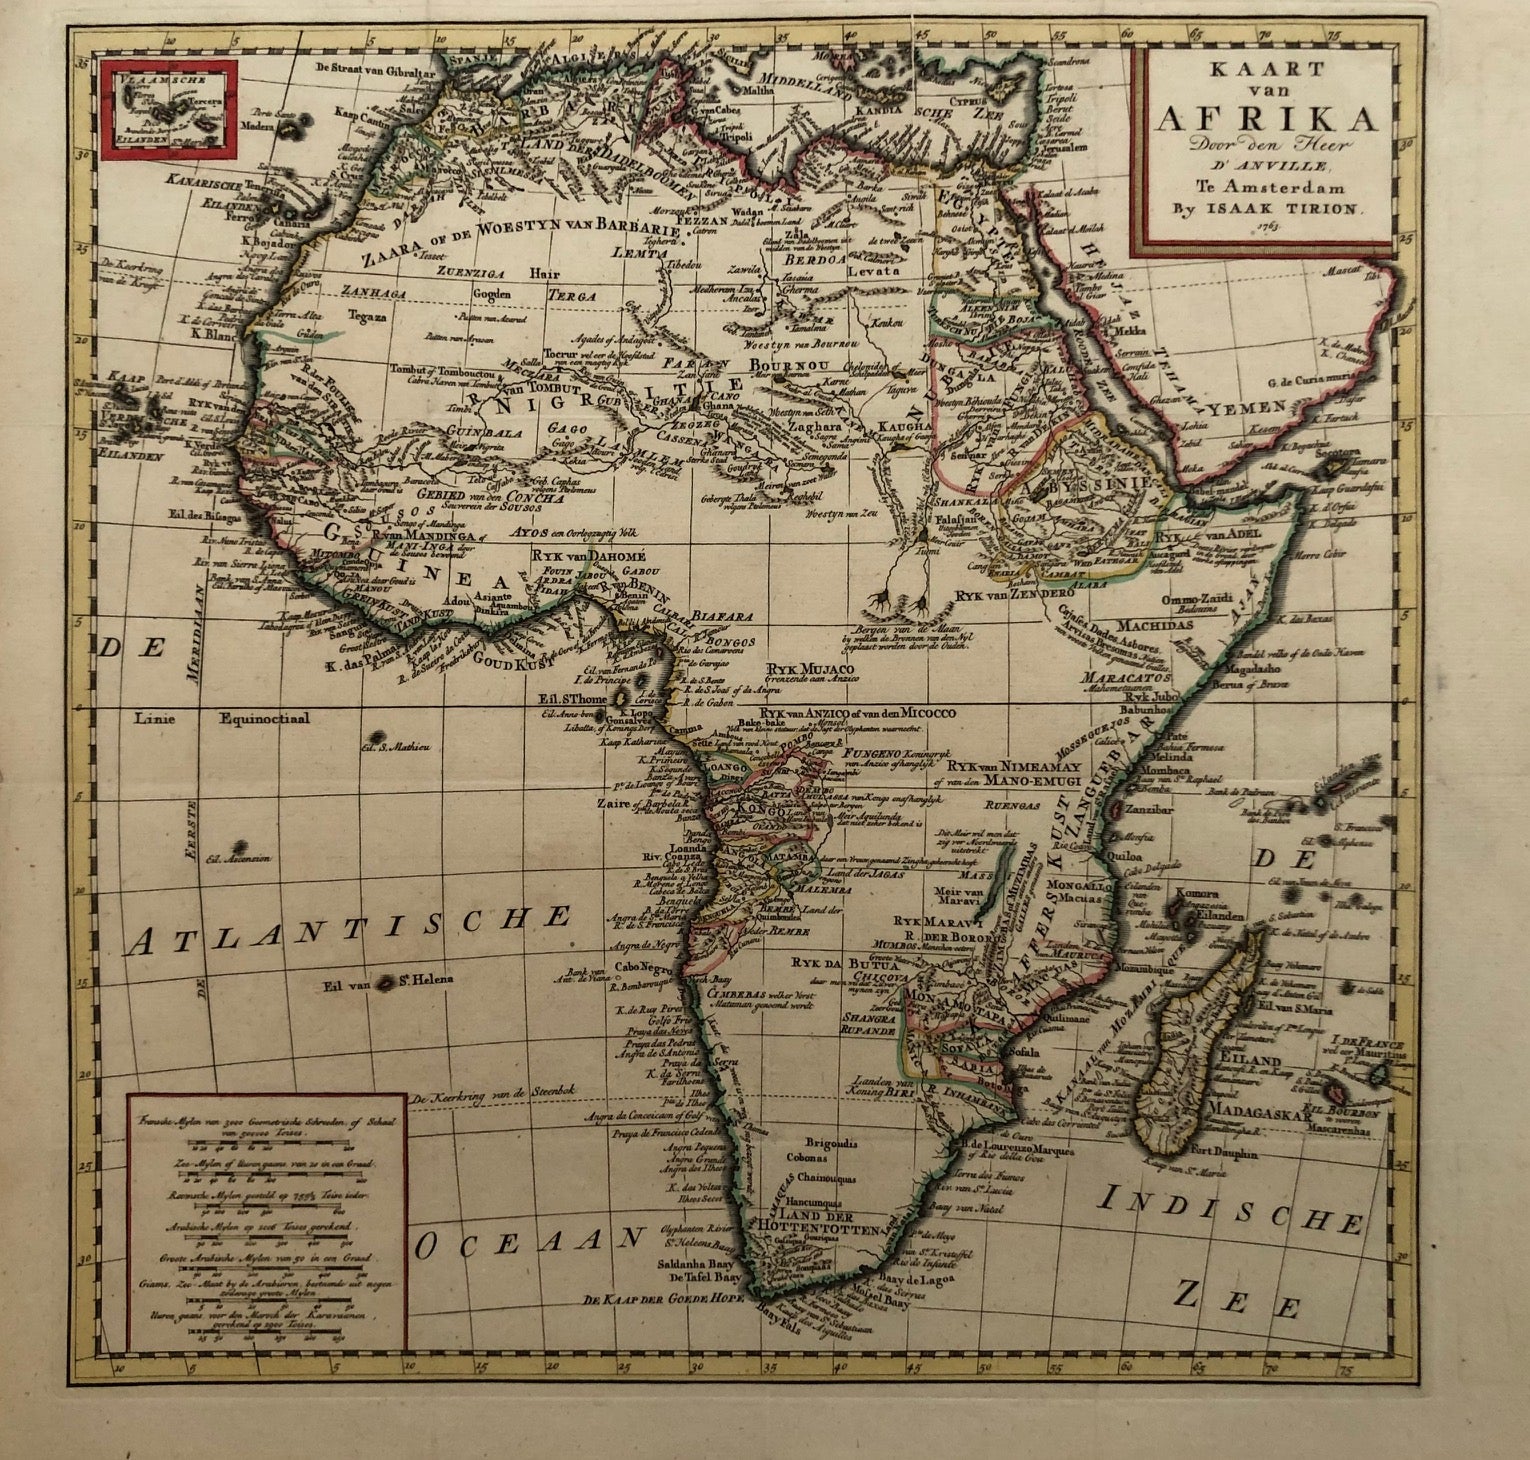 'Kaart van Afrika. Door den Heer D'Anville' Amsterdam by Isaak Tirion, 1763. Nice handcoloured map of Africa